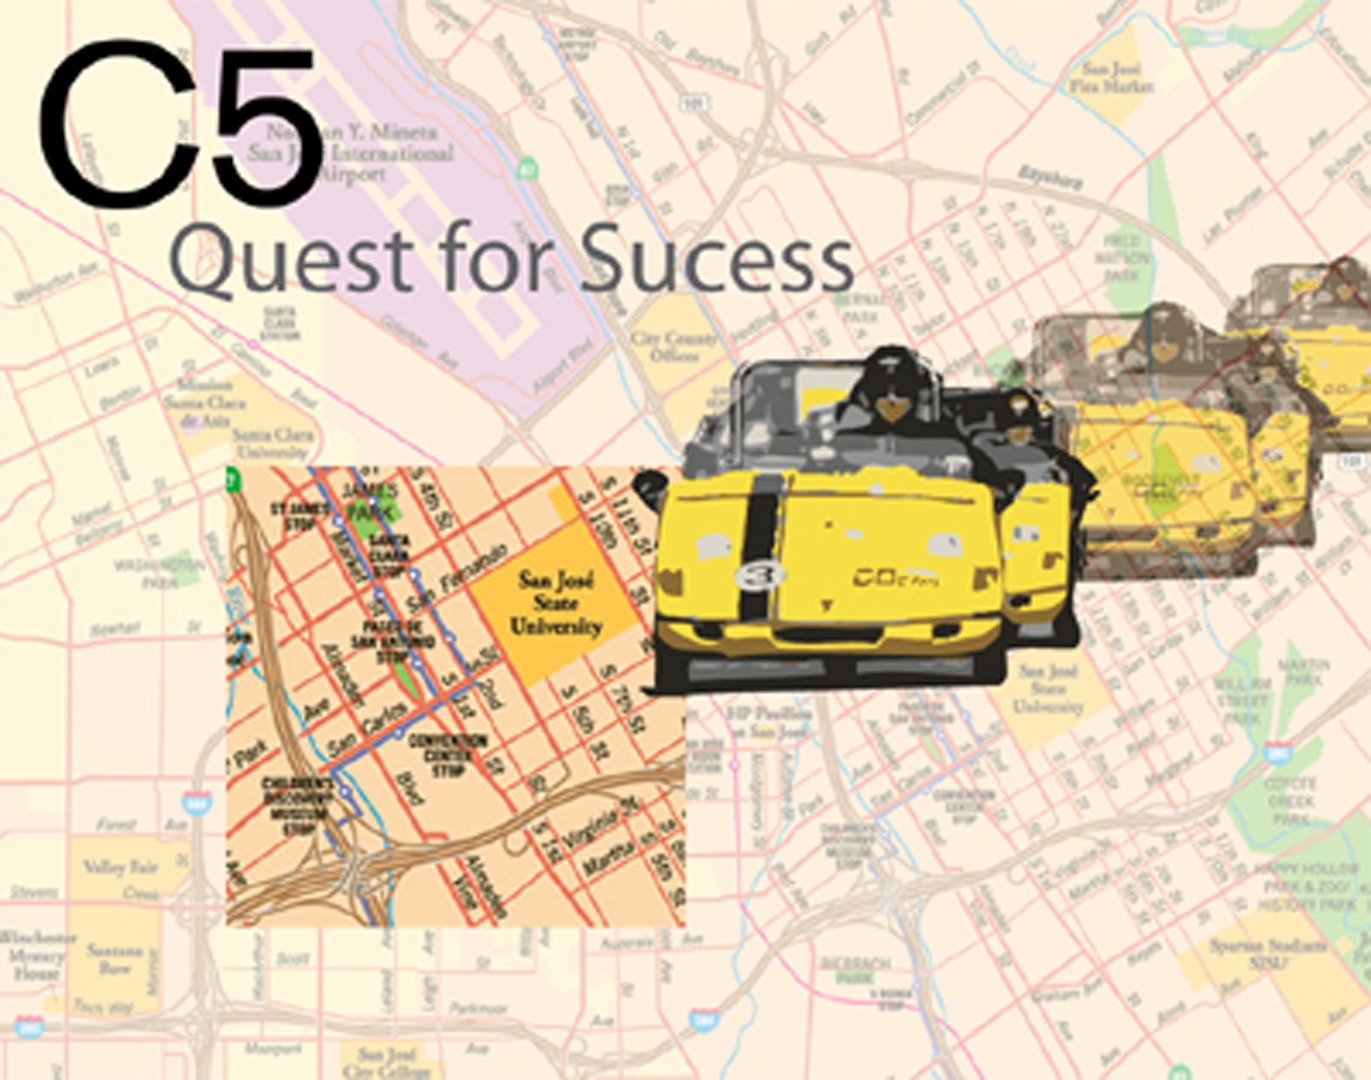 ©, C5, C5 Quest for Success